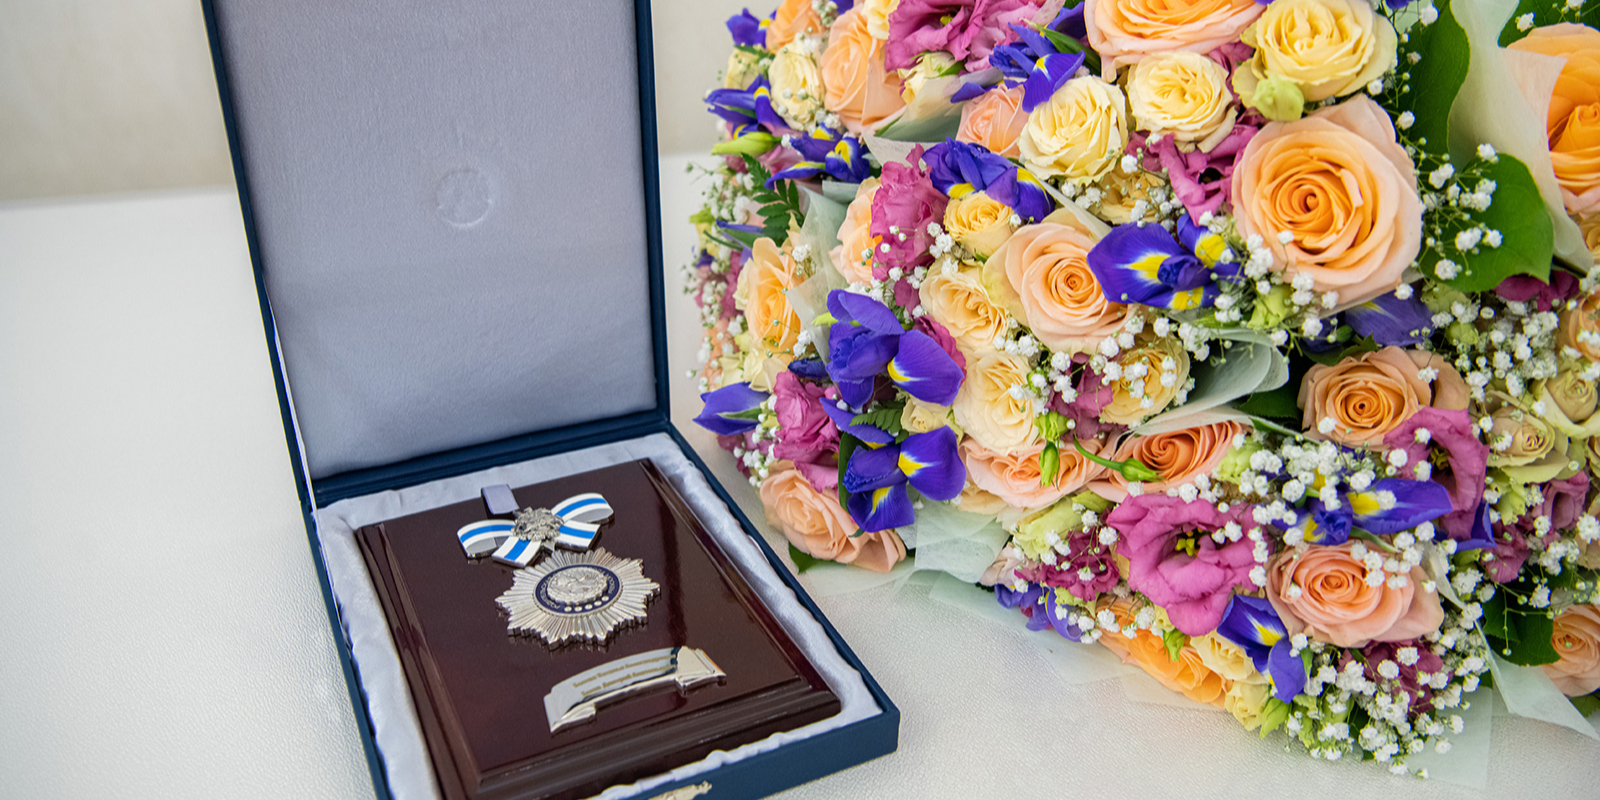 На мероприятии состоится вручение ордена «Родительской славы» многодетной маме Центрального административного округа. Фото: сайт мэра Москвы